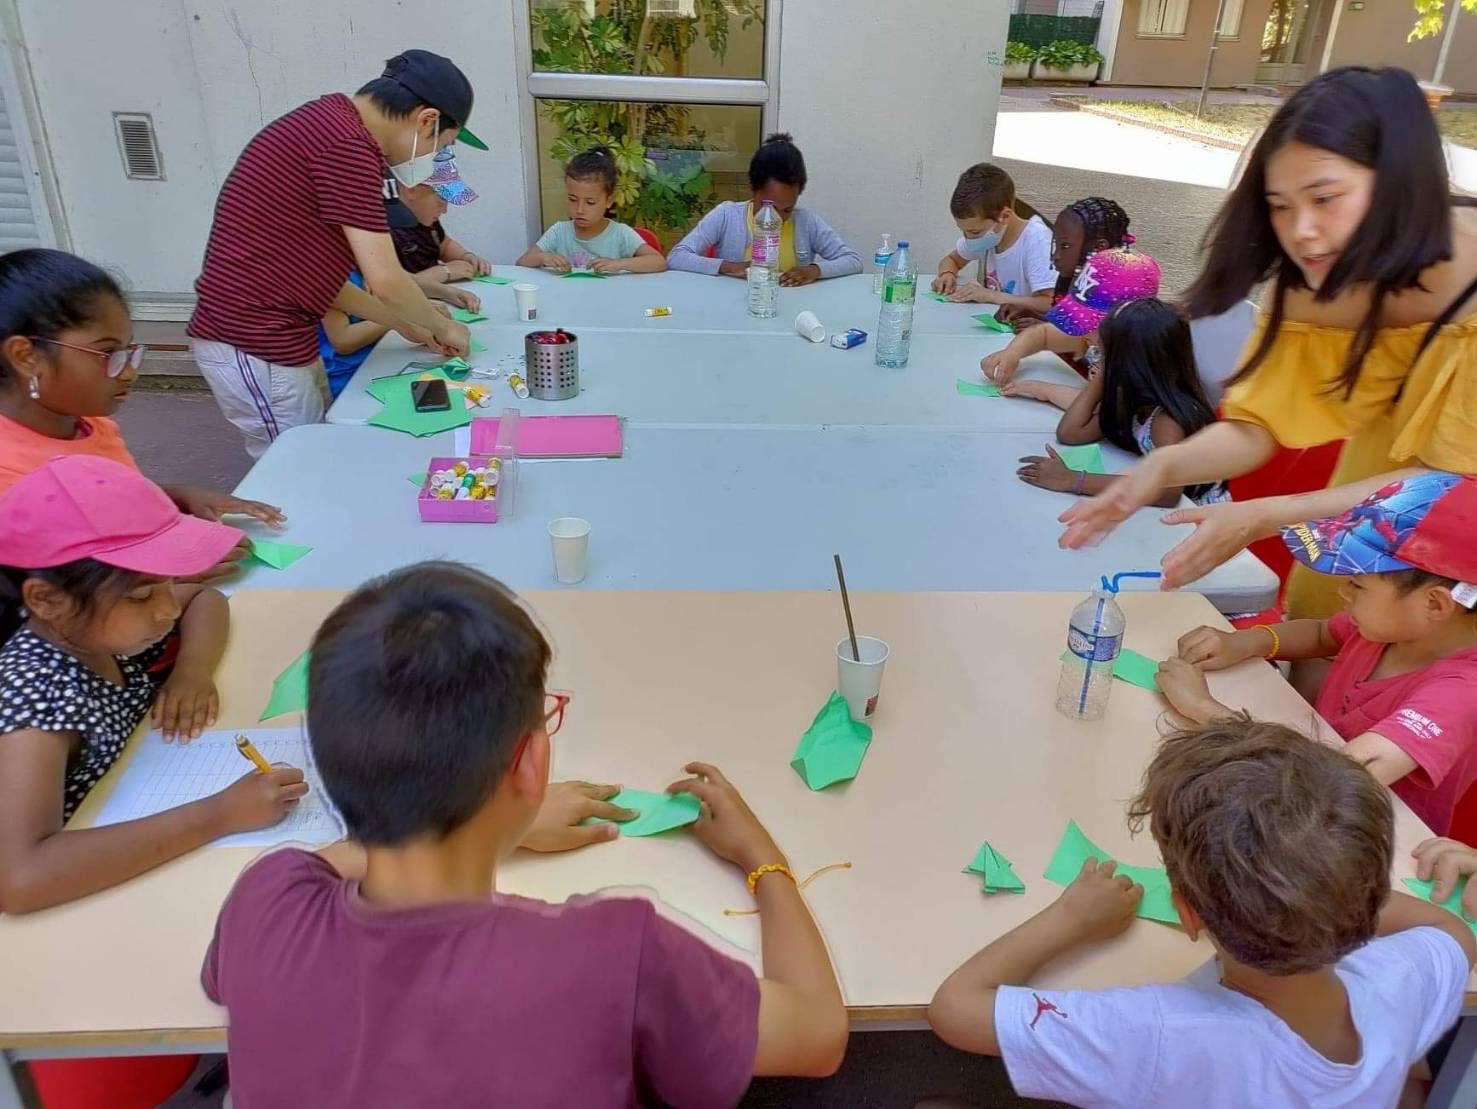 法國亭林中文學校於7月11日舉辦為期6天的夏令營活動，圖為學員學習摺紙。